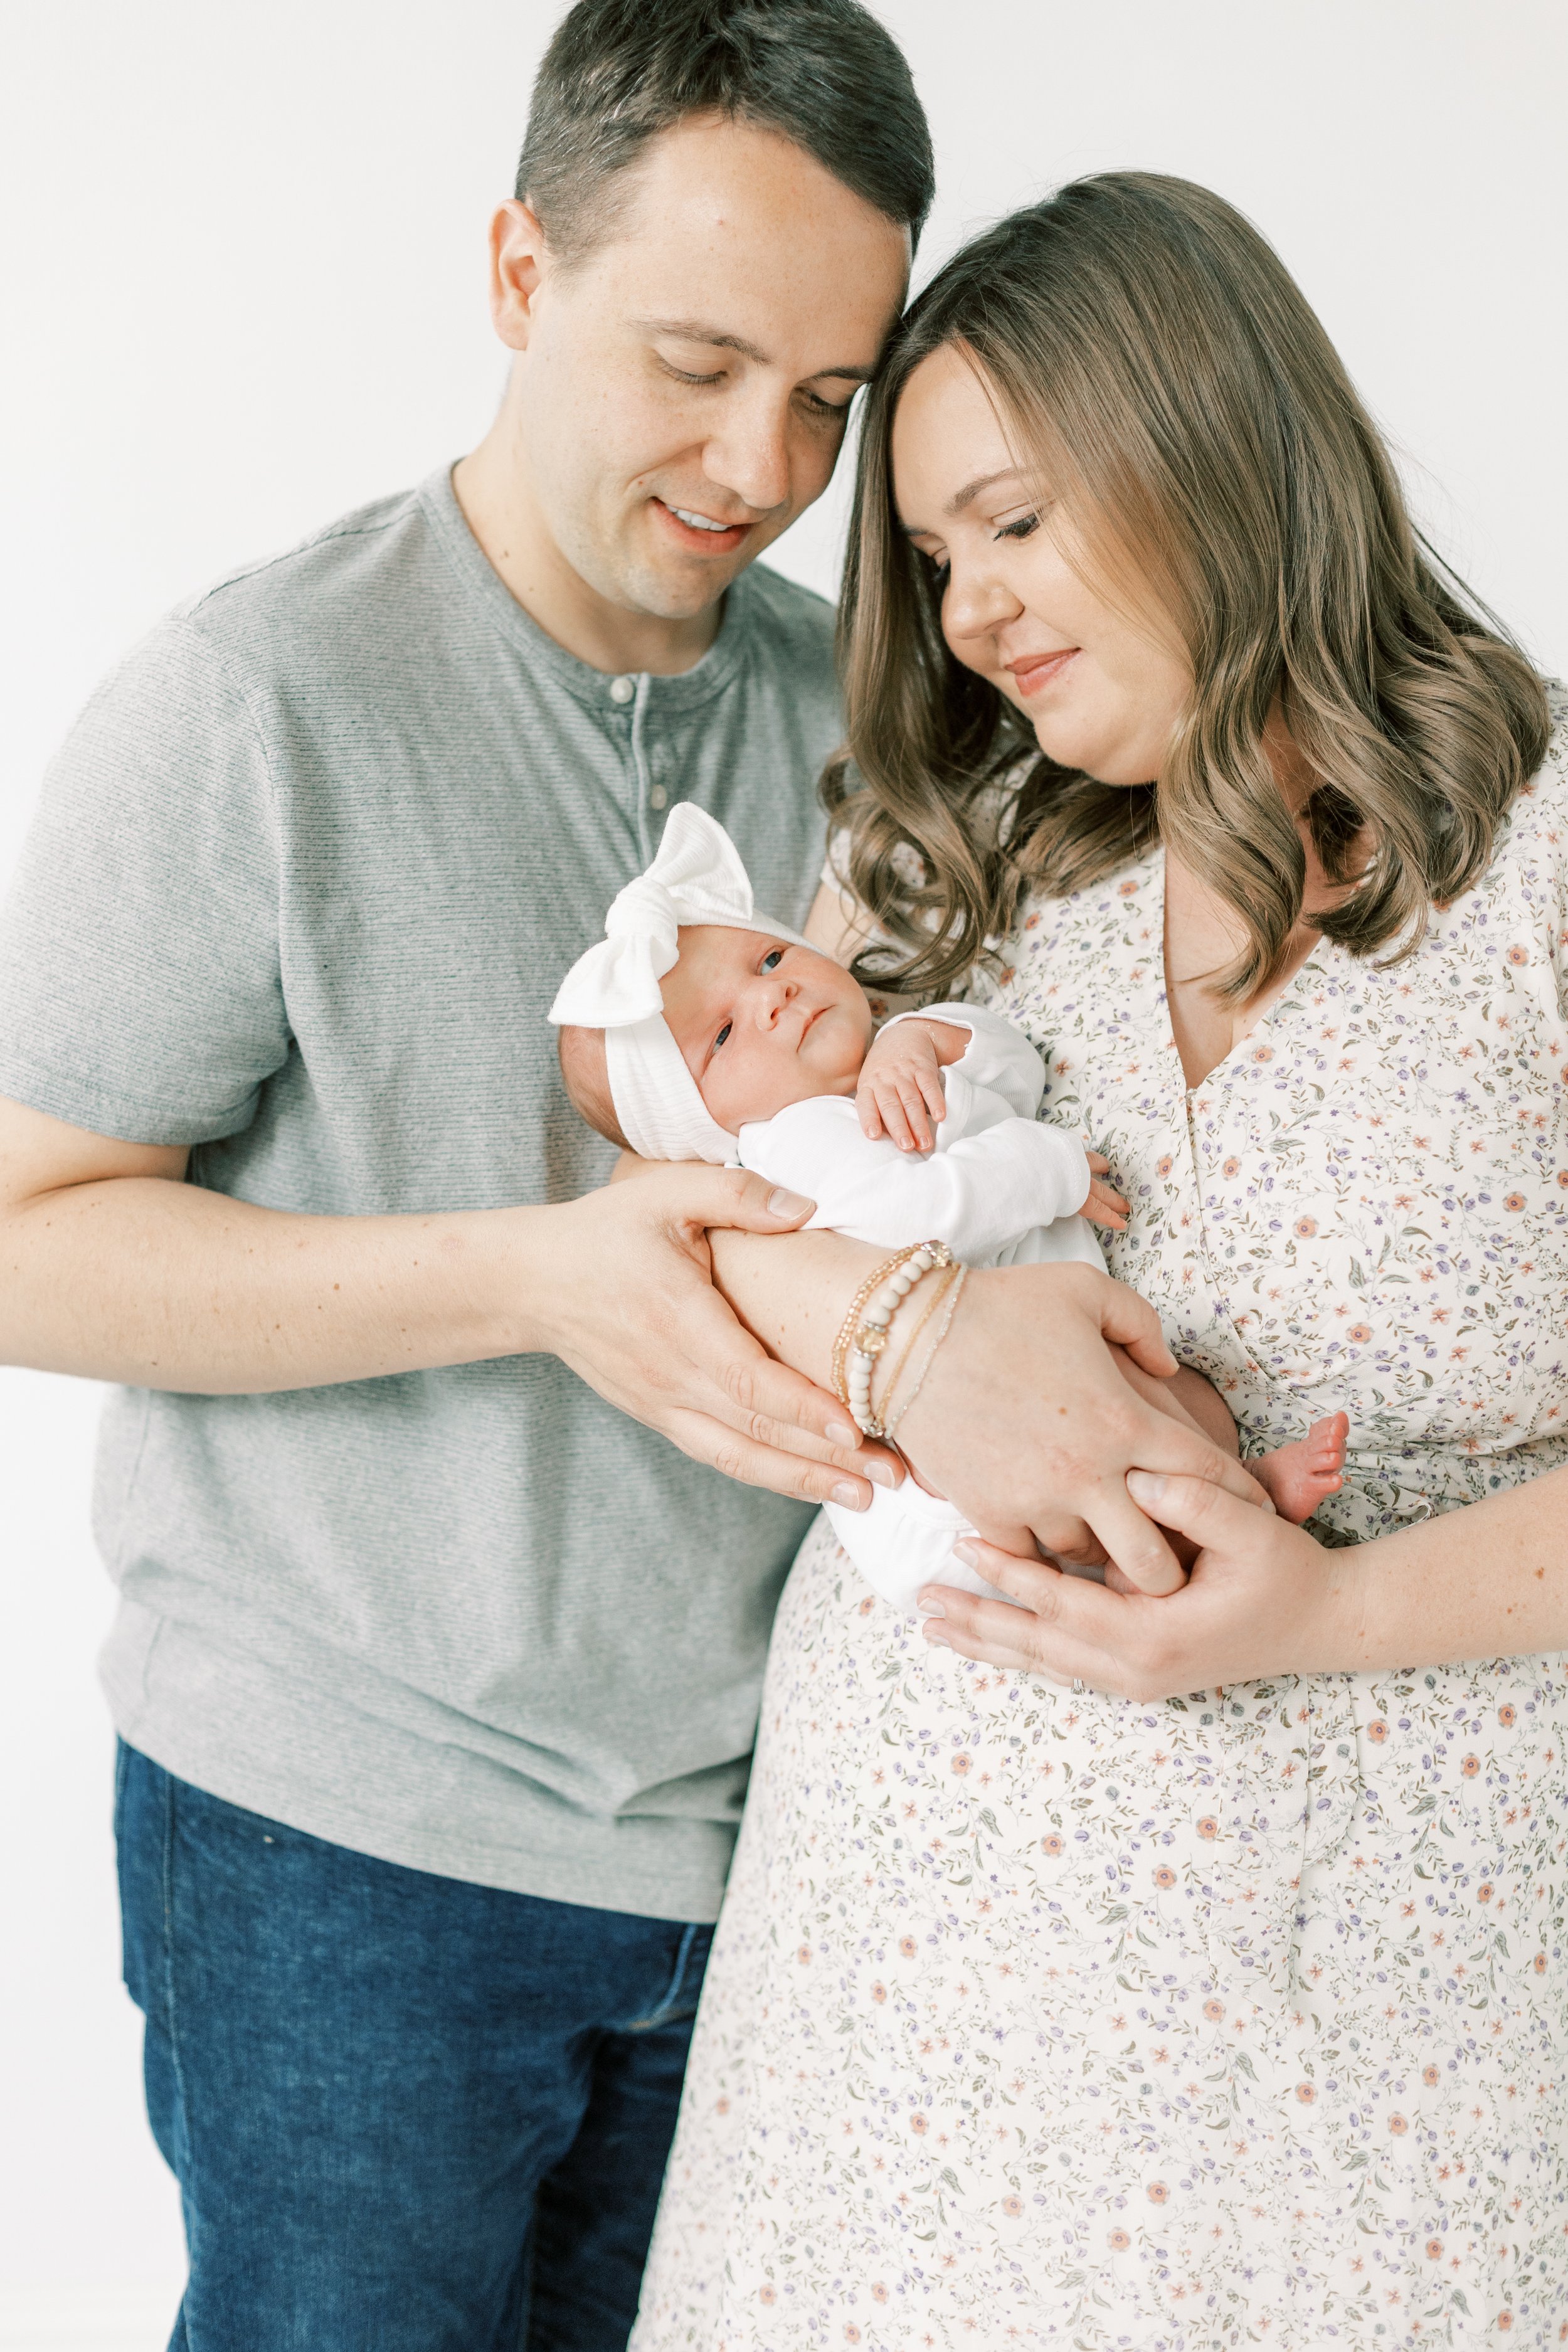 Baby Georgia - Vanessa Wyler Waukesha Newborn Photography Studio